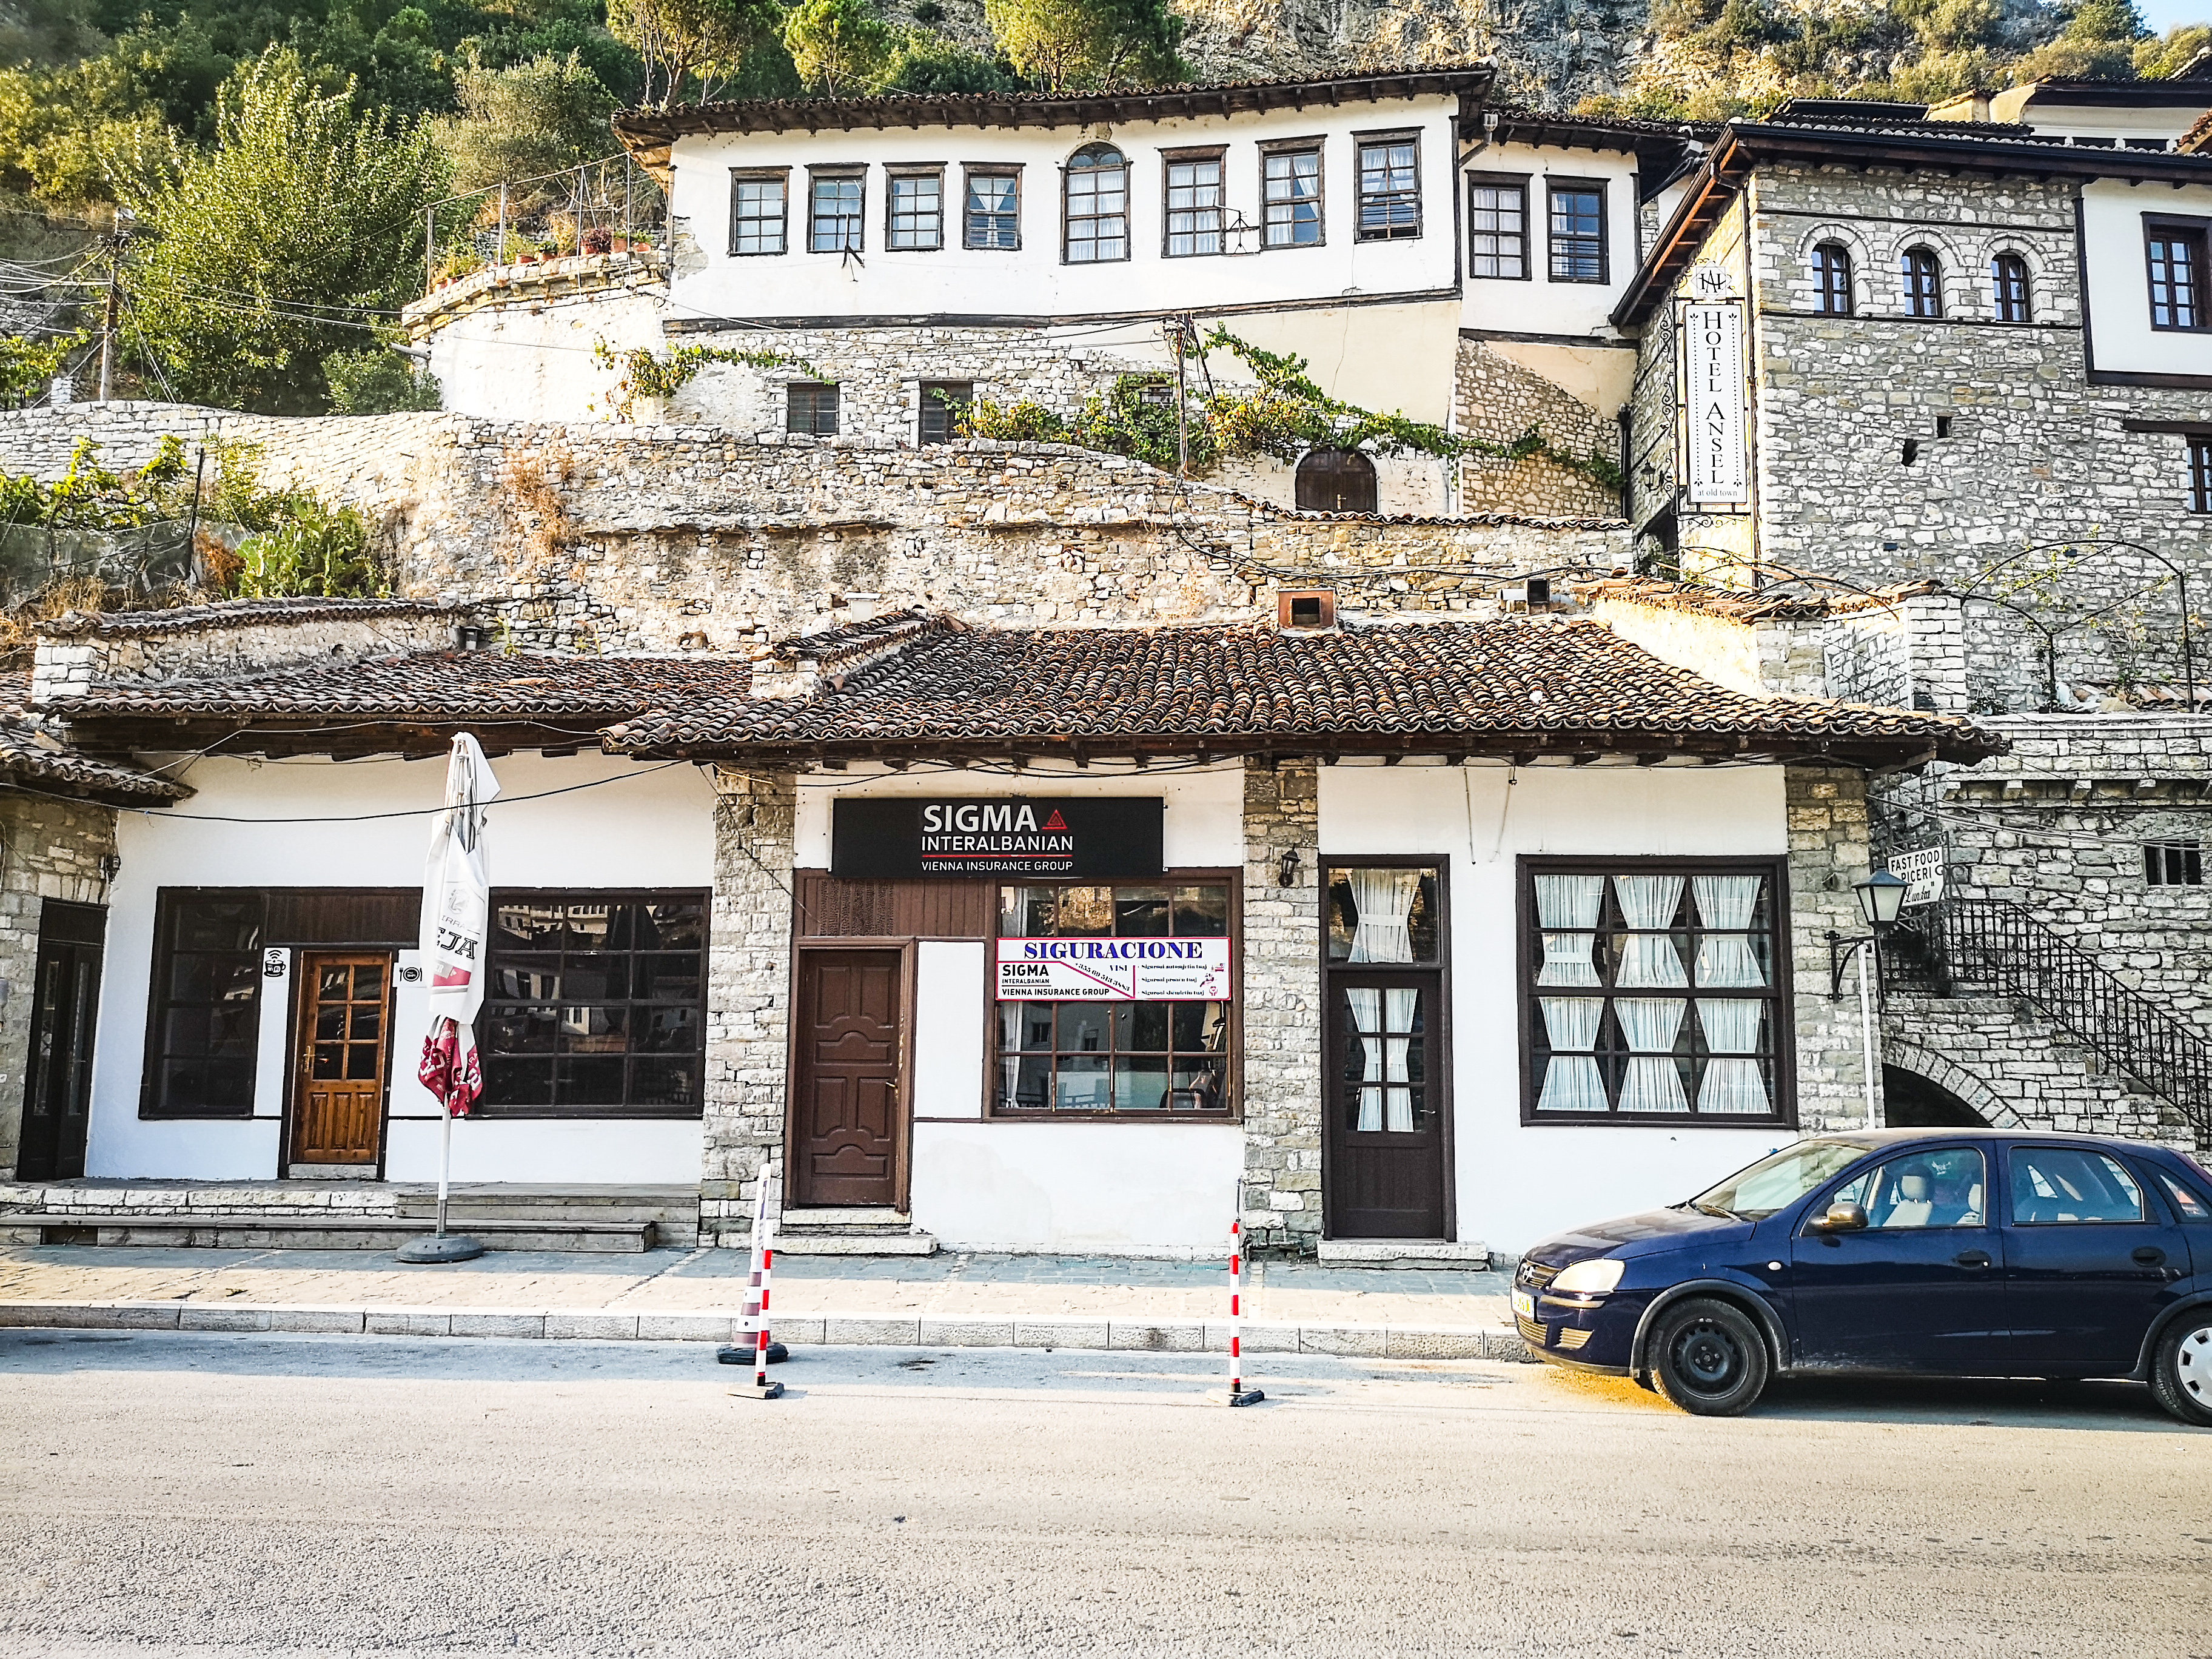 Miasteczko Berat w Albanii, tradycyjny dom.
A traditional house in Albania, Berat.